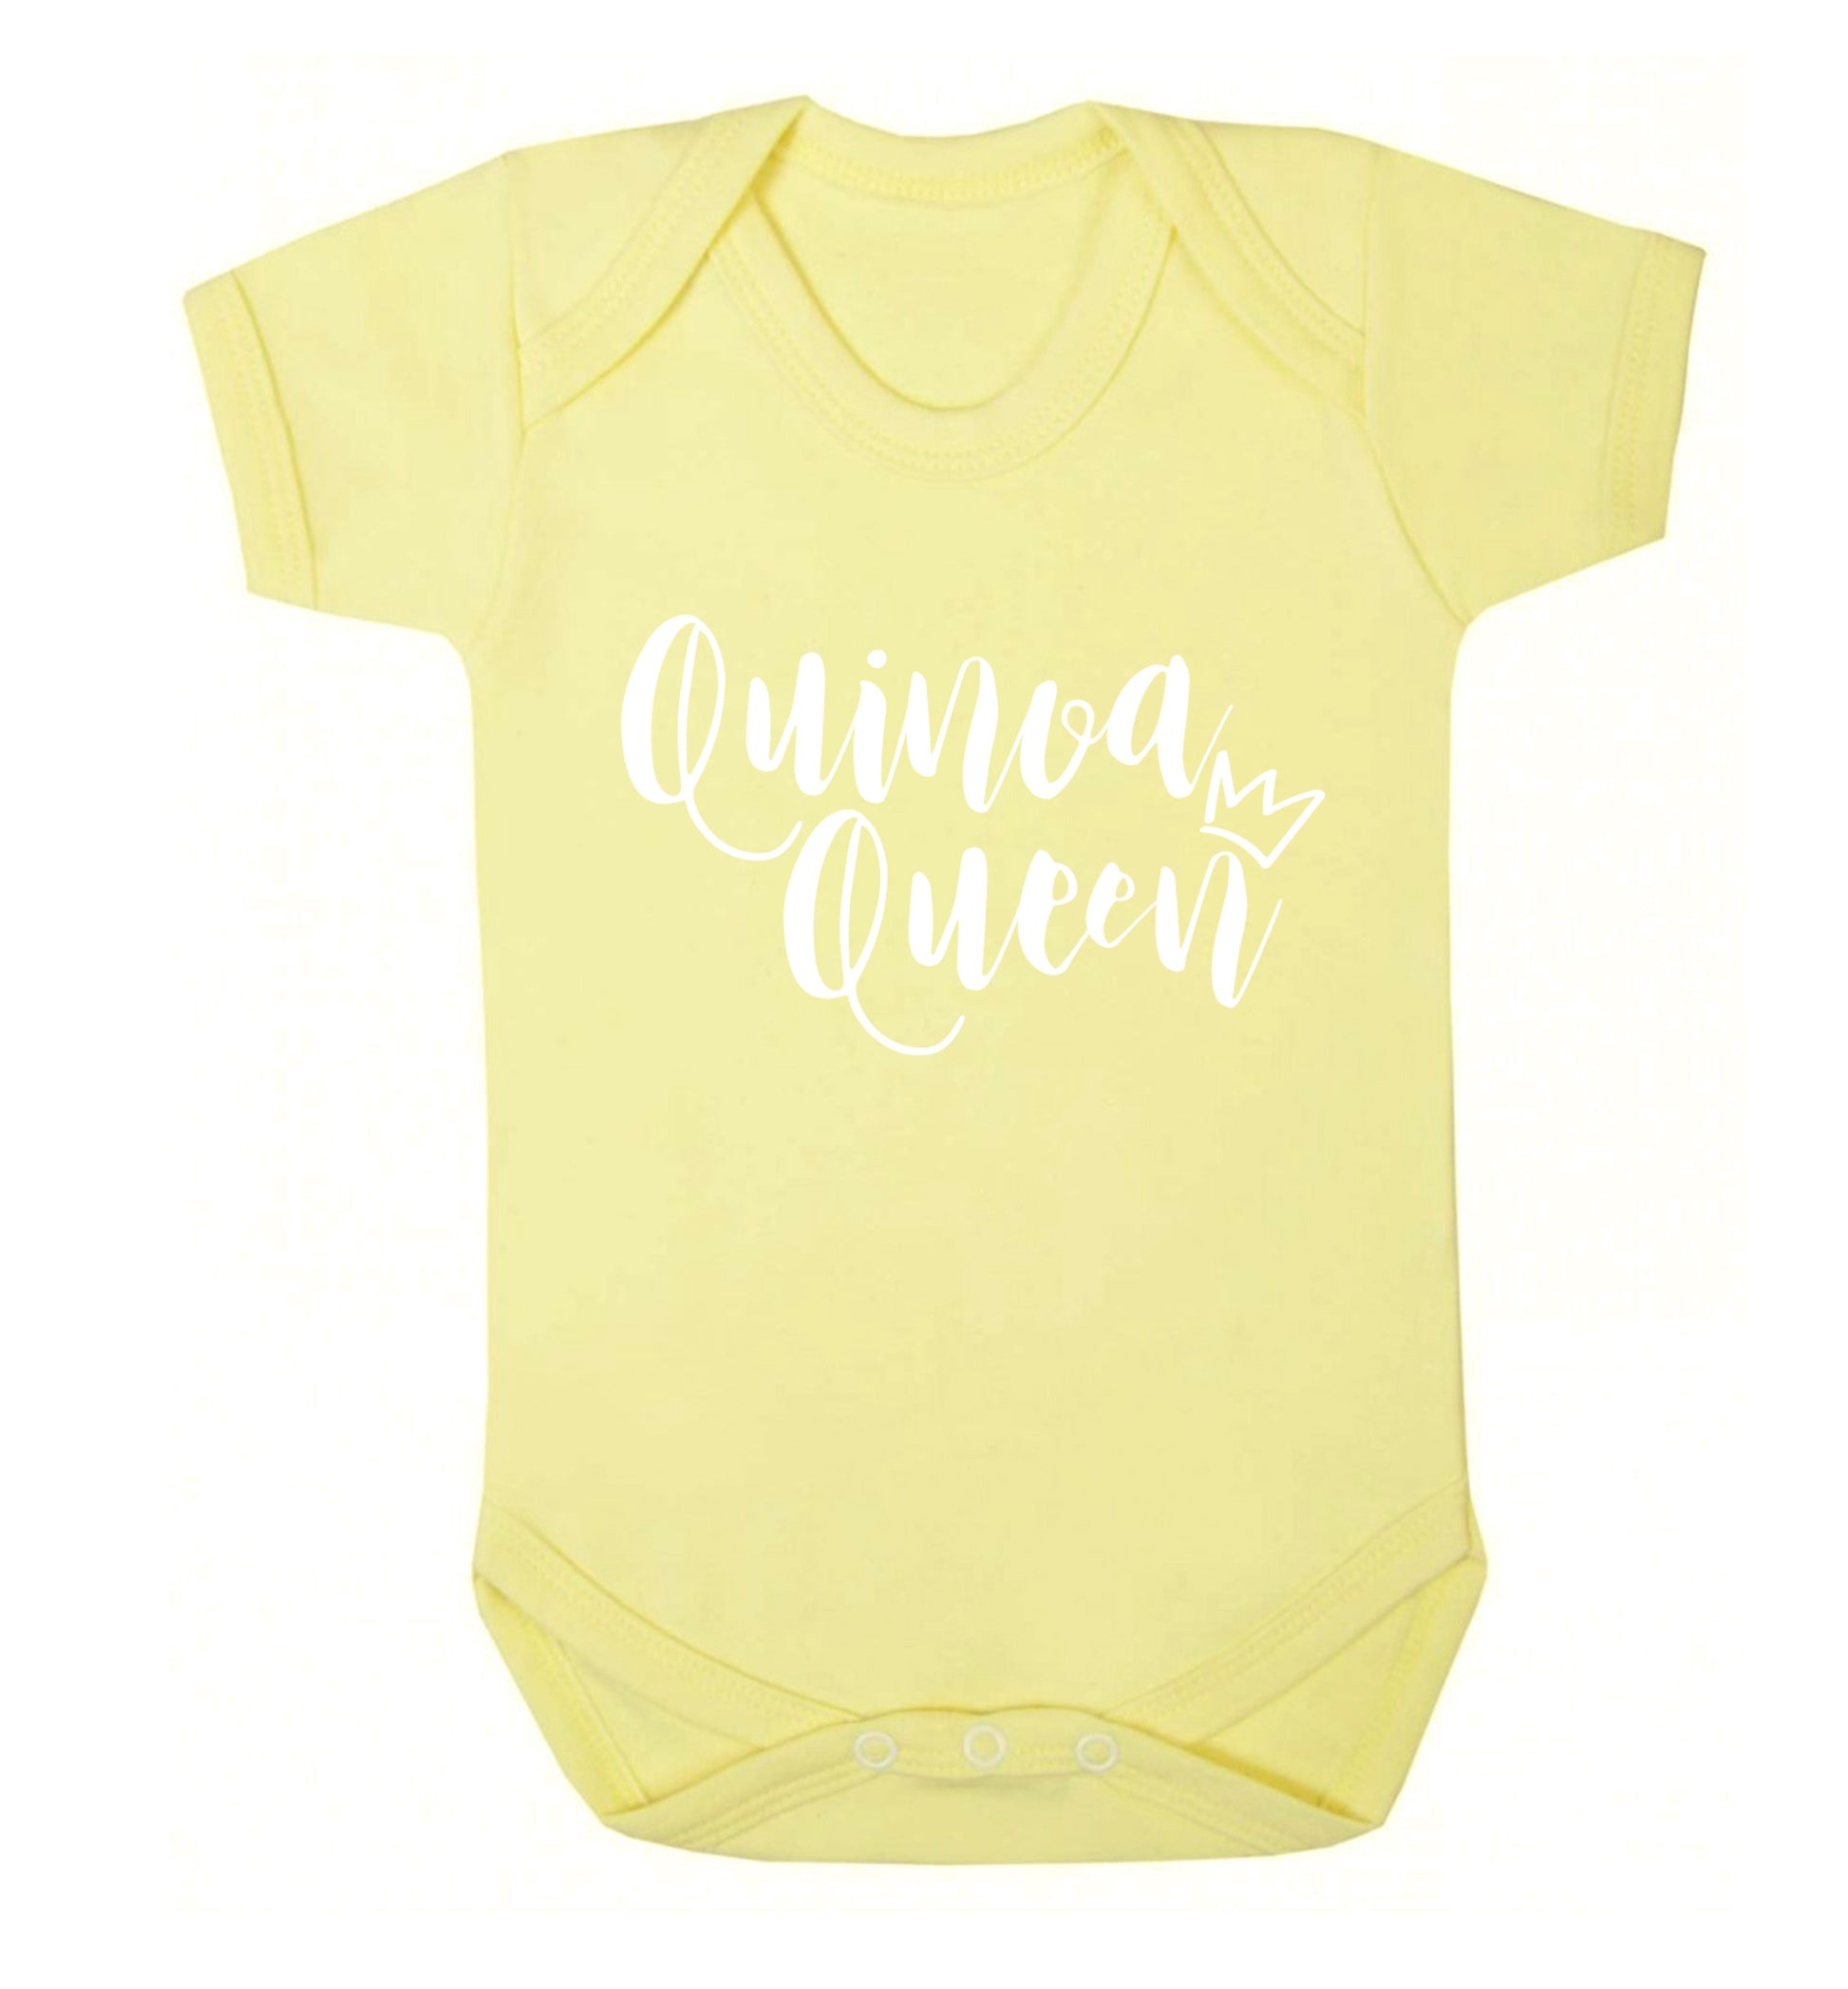 Quinoa Queen Baby Vest pale yellow 18-24 months